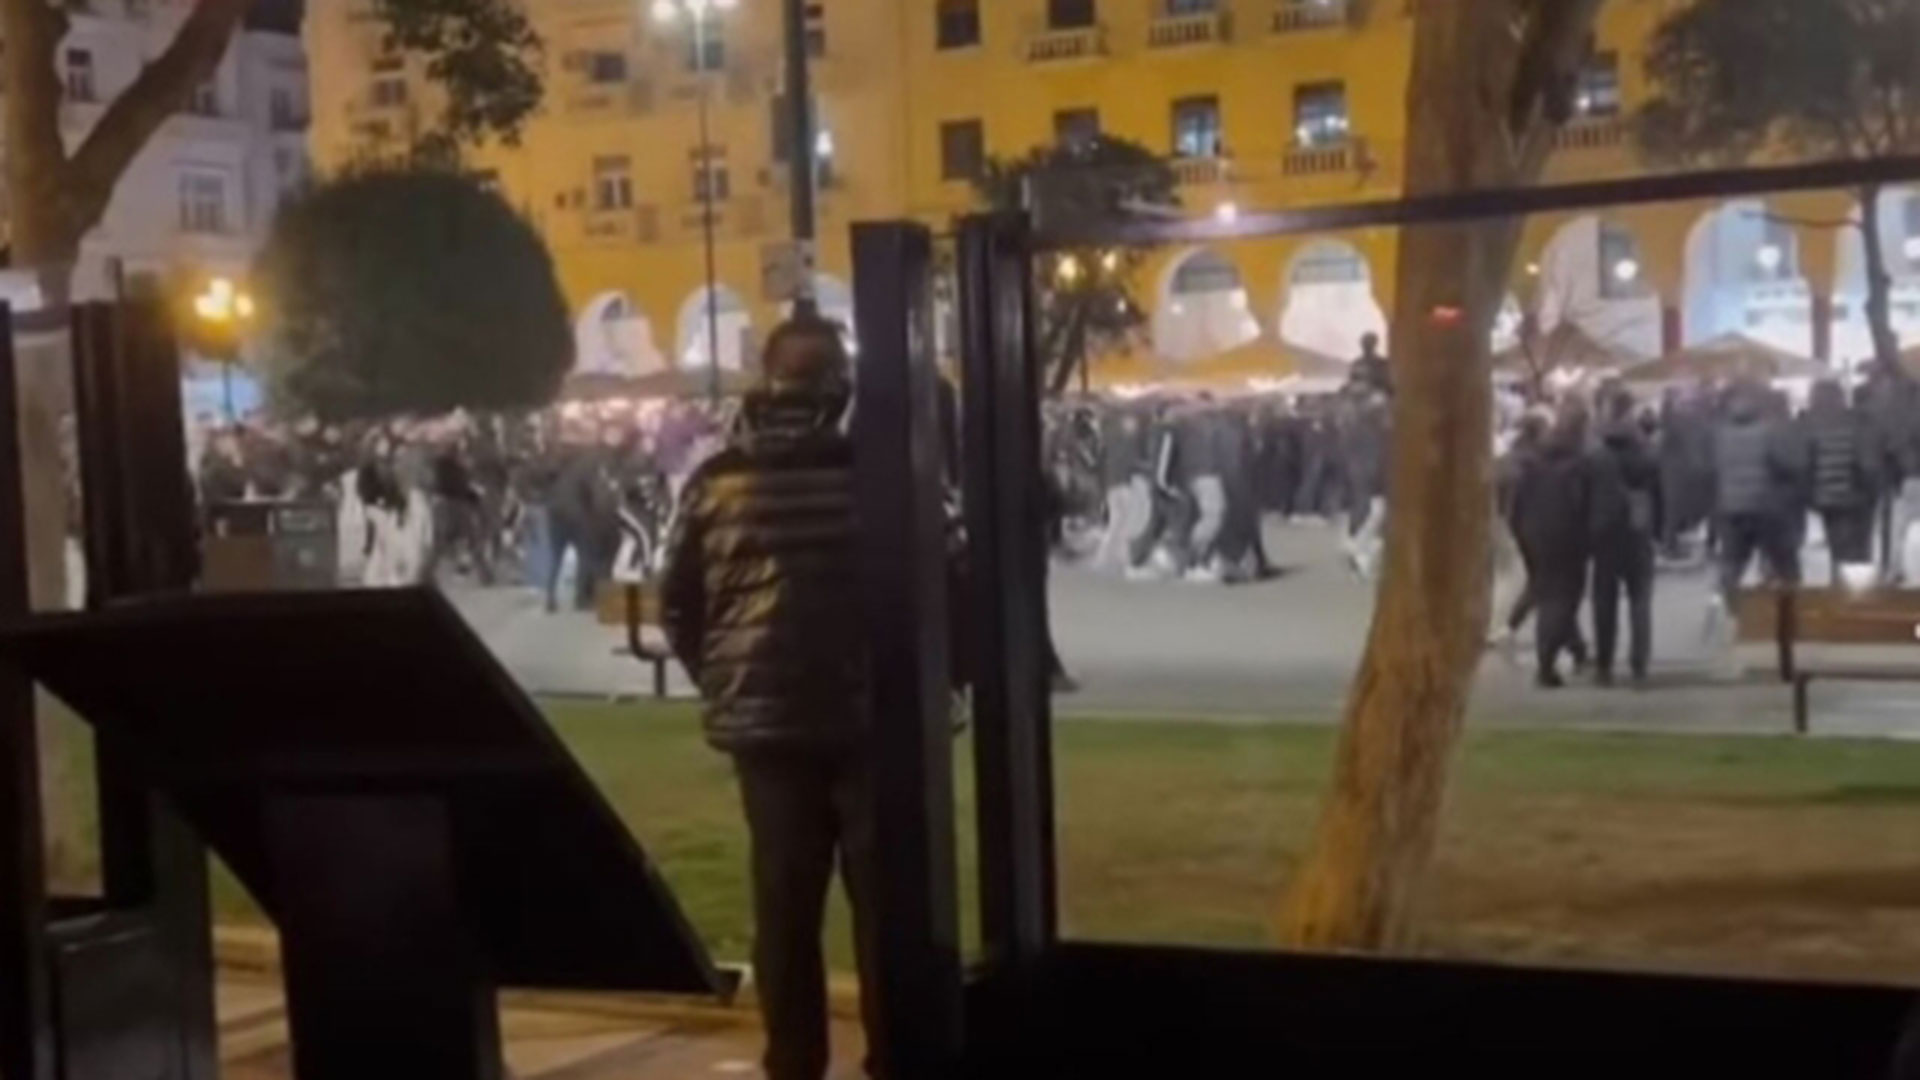 Θεσσαλονίκη: Στο μικροσκόπιο τα βίντεο από την ομοτρανσφοβική επίθεση - Τι λέει η Δημογλίδου